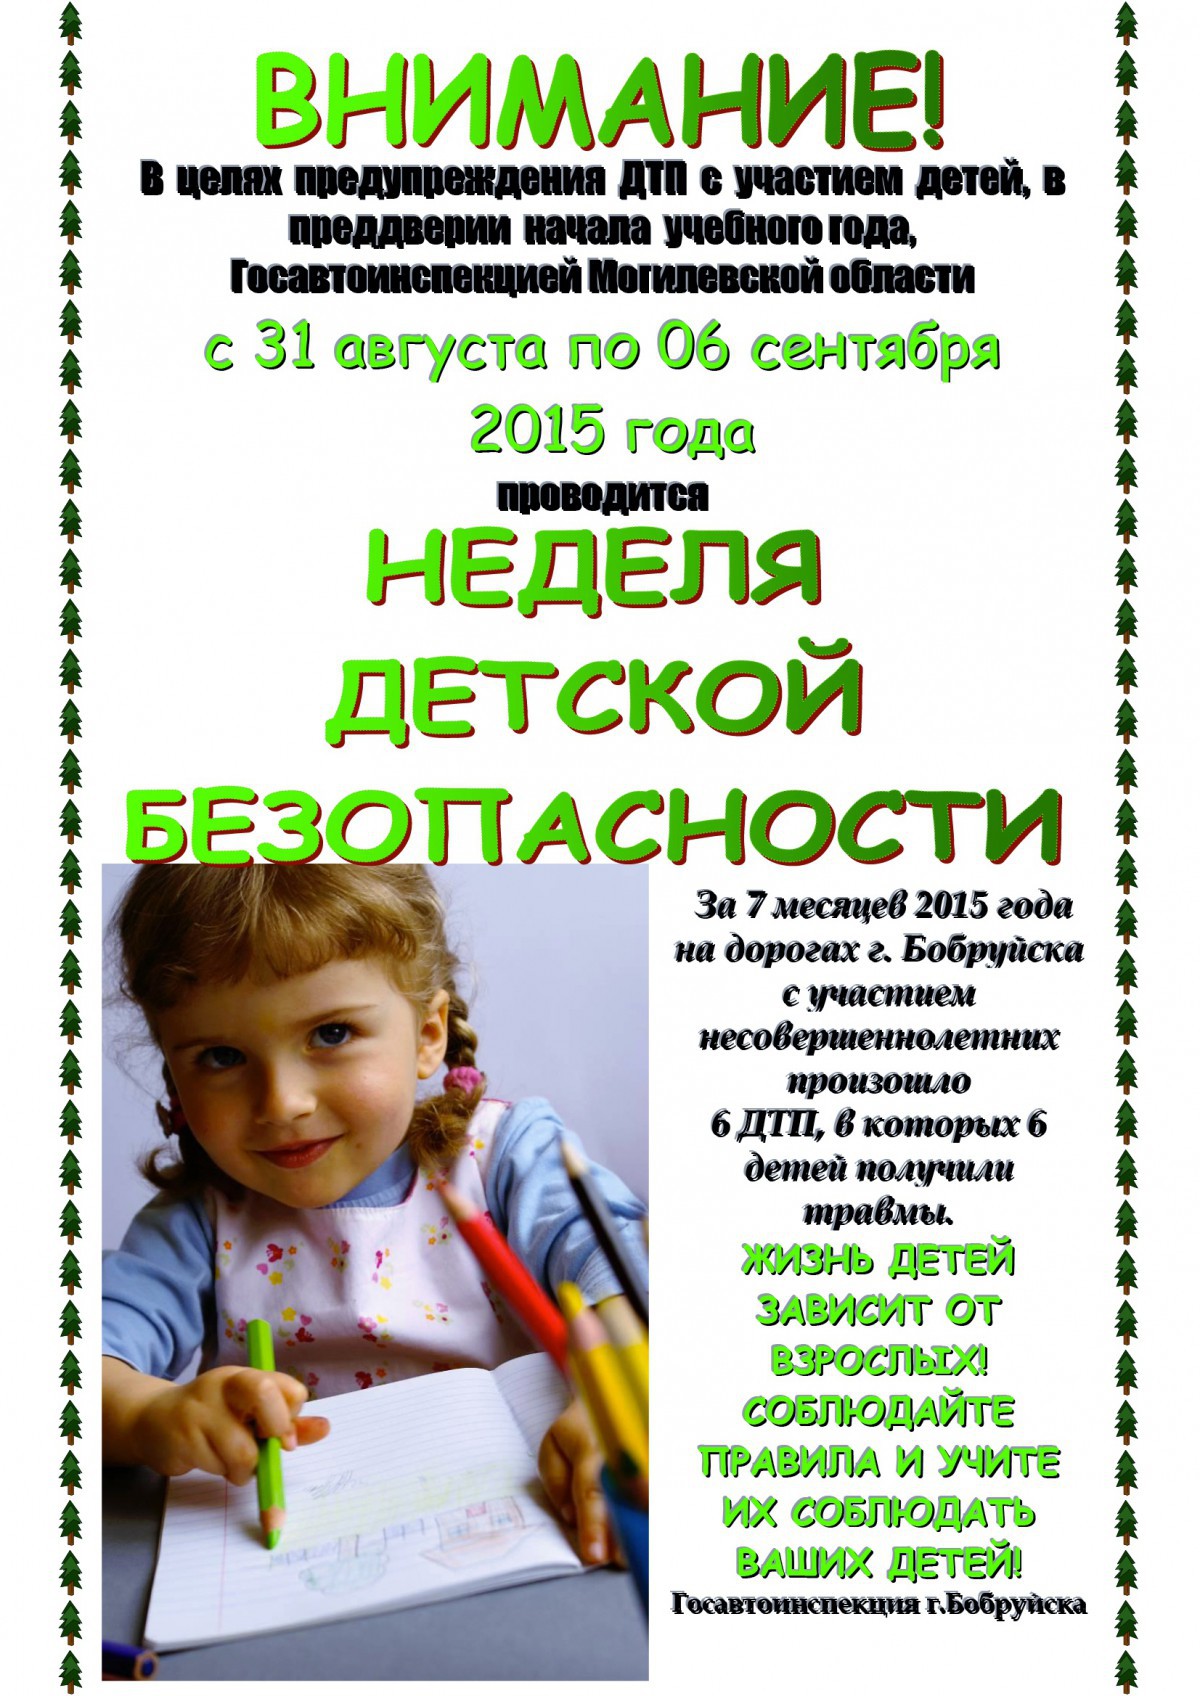 В Бобруйске проводится специальное комплексное мероприятие «ВНИМАНИЕ - ДЕТИ!»